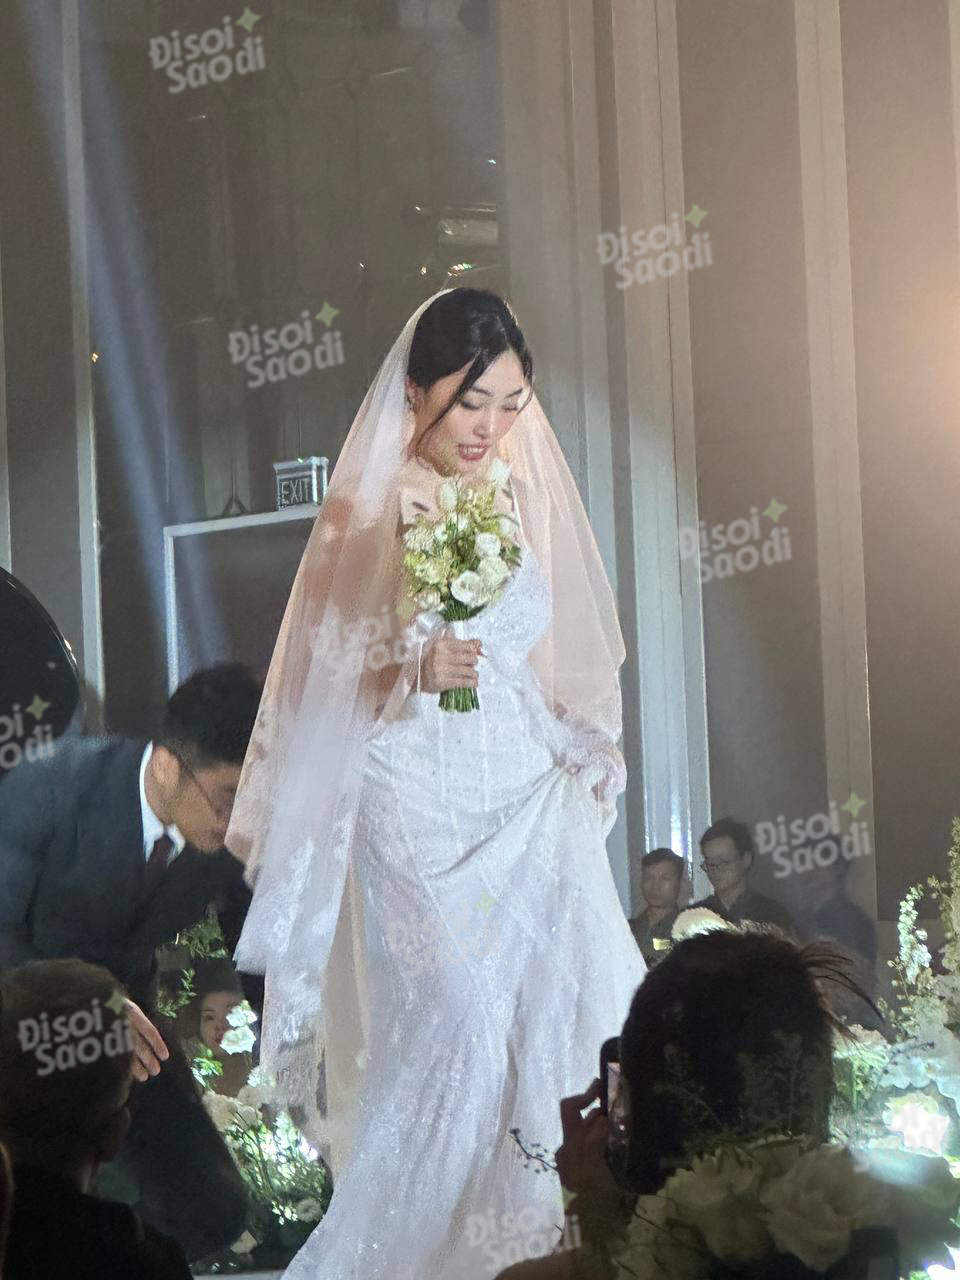 HOT: Vũ. bất ngờ tổ chức đám cưới tại Hà Nội, visual cô dâu chú rể nổi bật - Ảnh 4.